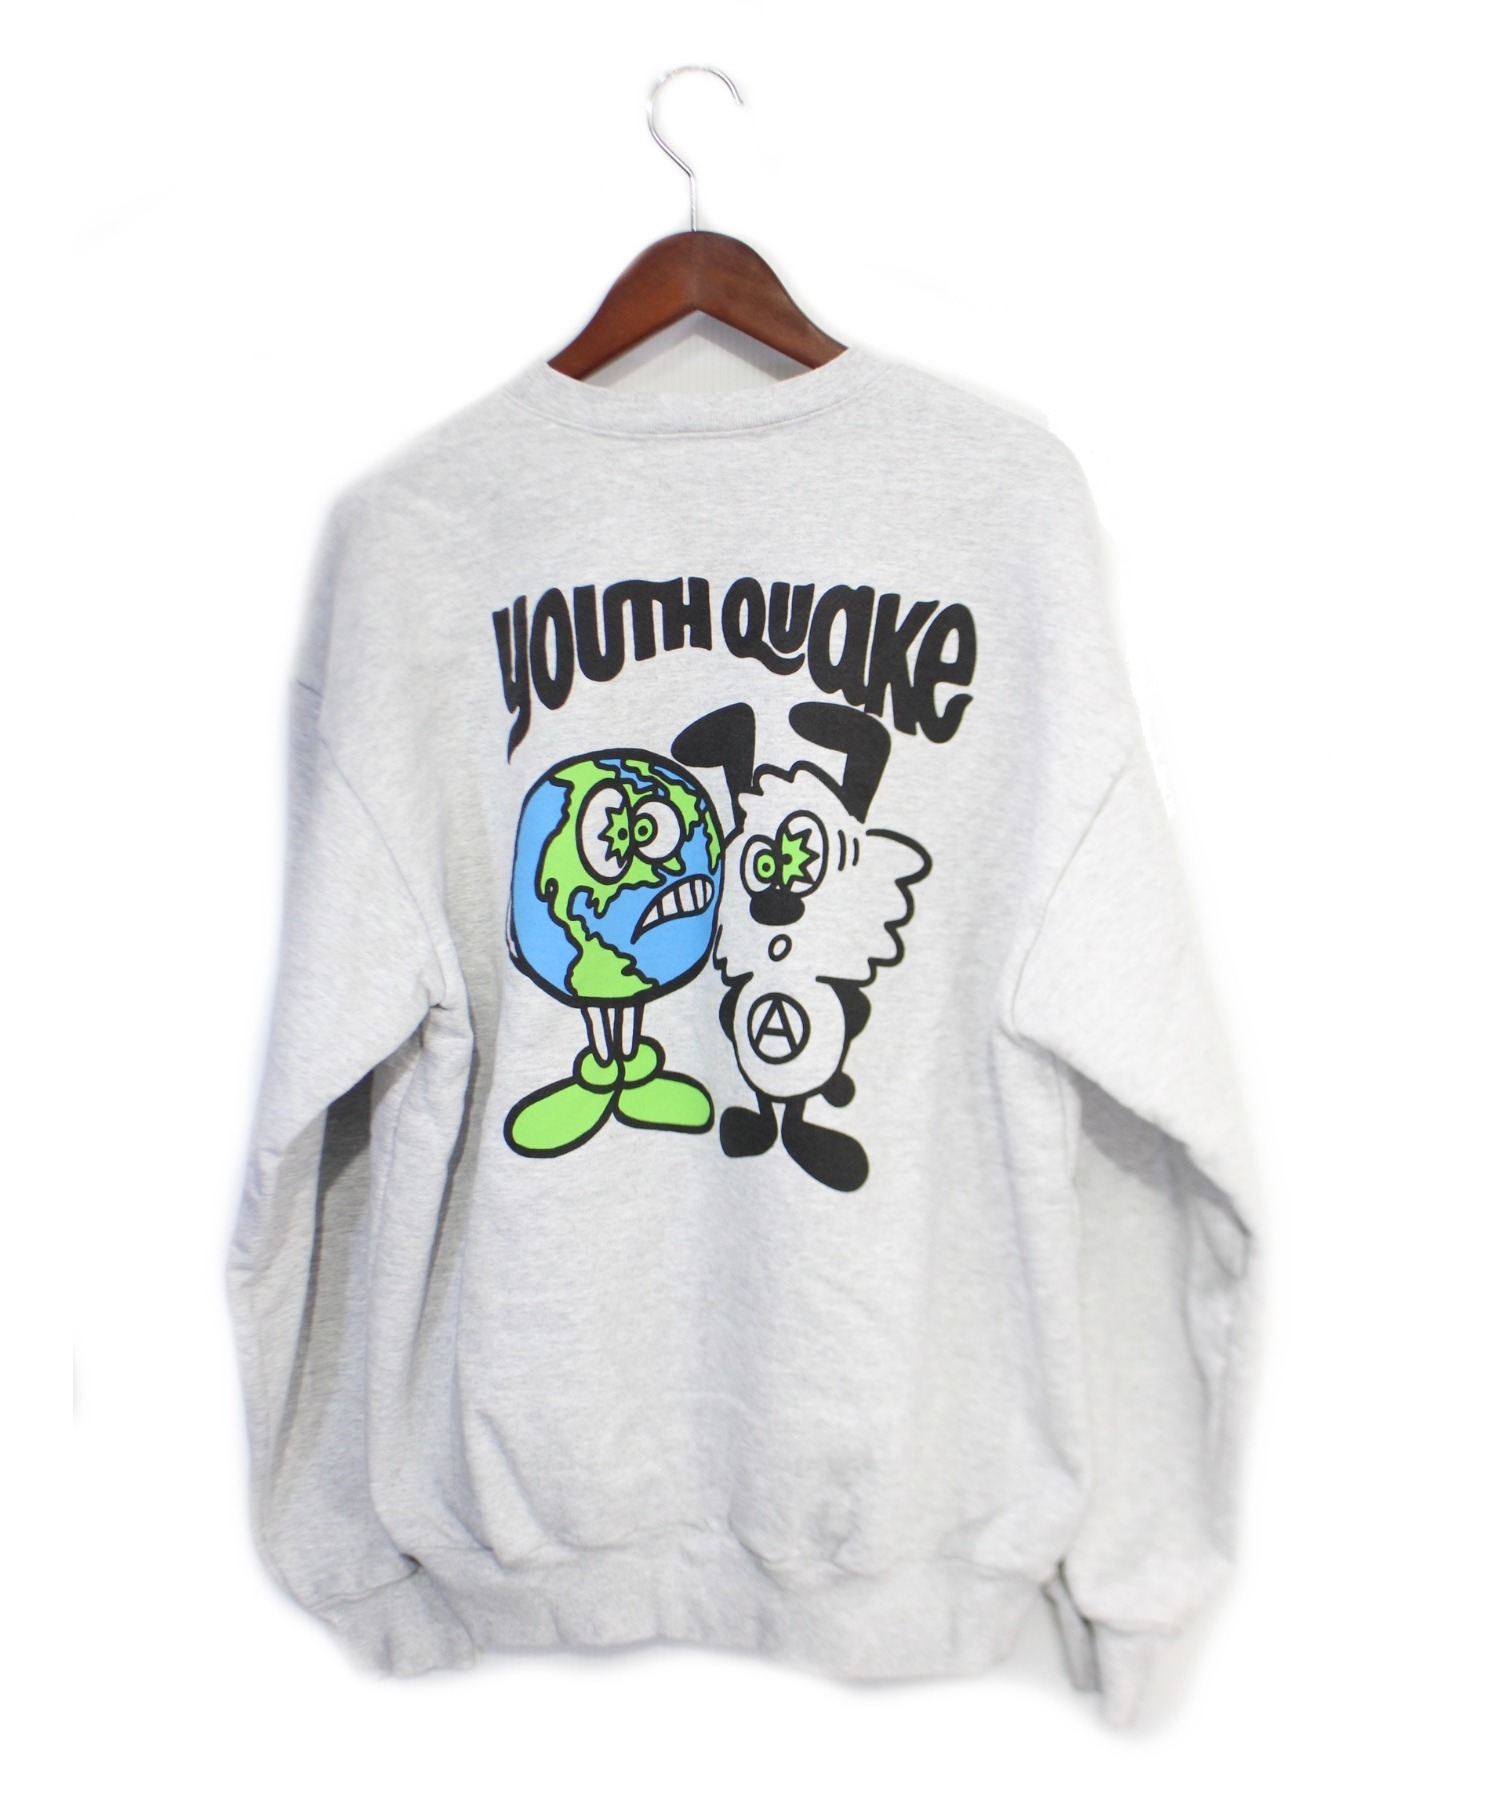 verdy × youth quake hoodie XL | www.carmenundmelanie.at